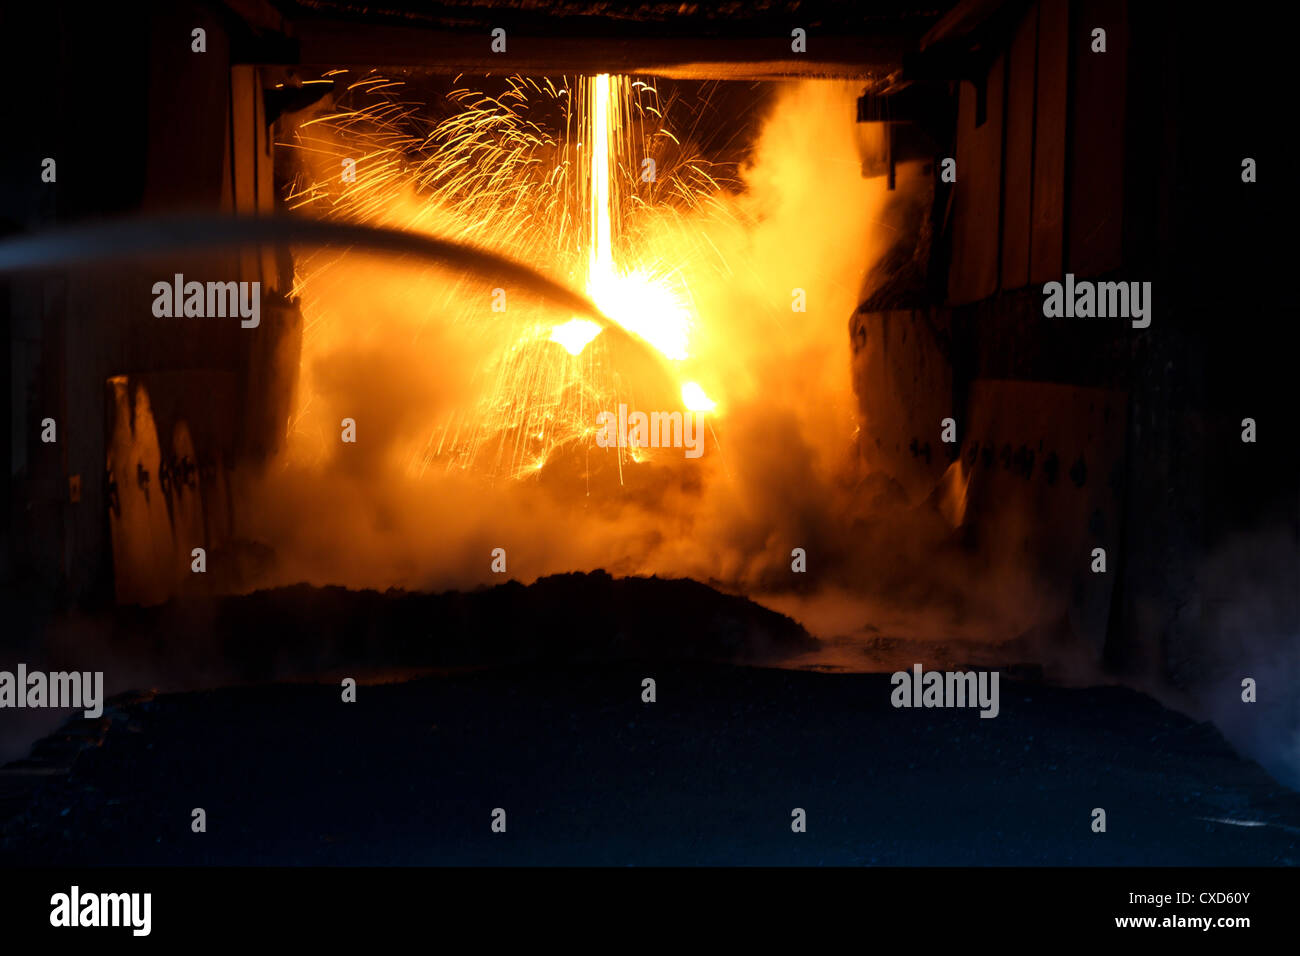 furnace sparks Stock Photo